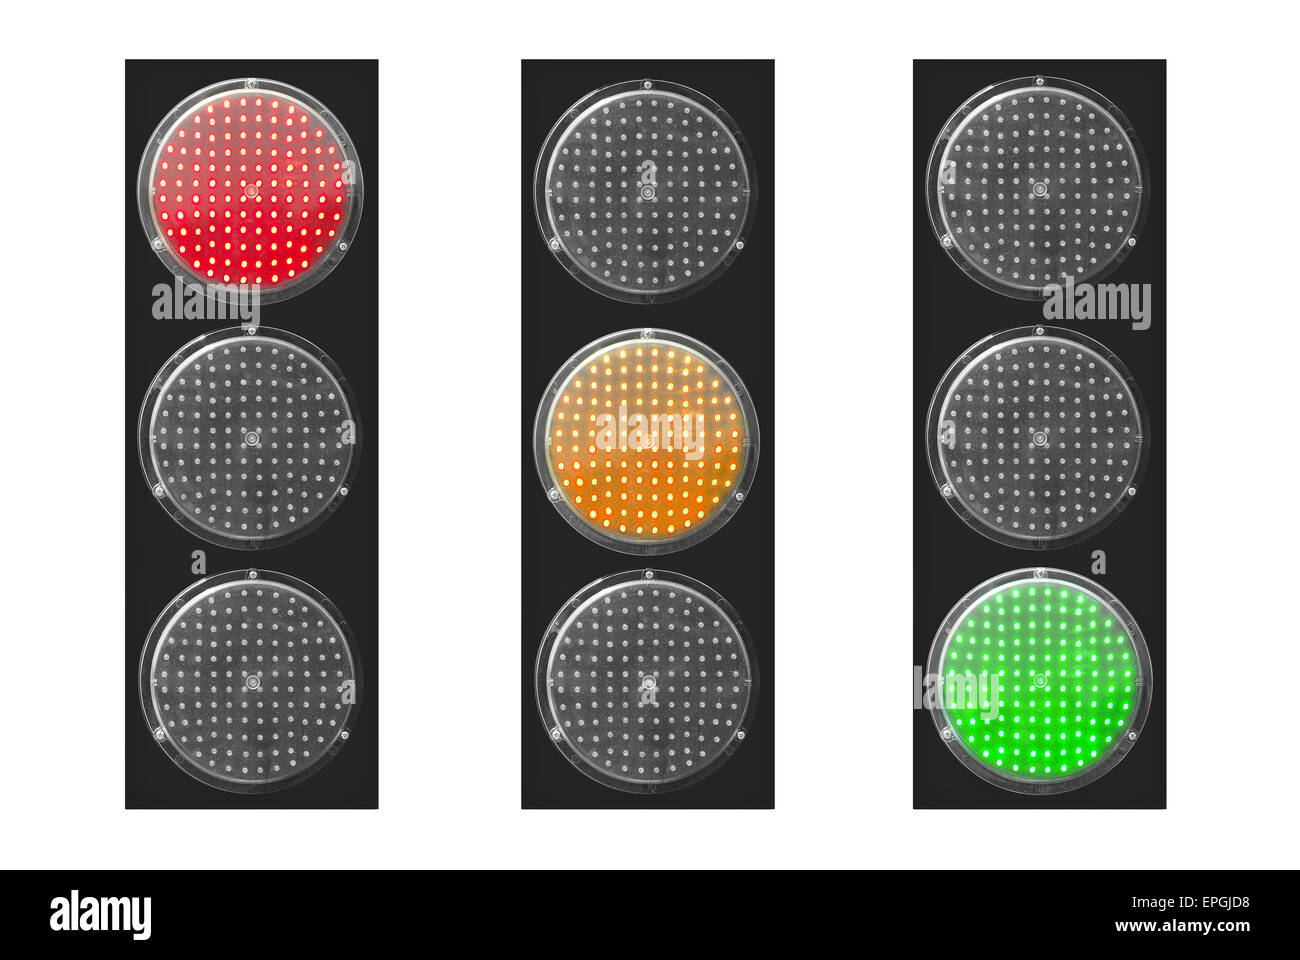 Semafori isolati immagini e fotografie stock ad alta risoluzione - Alamy